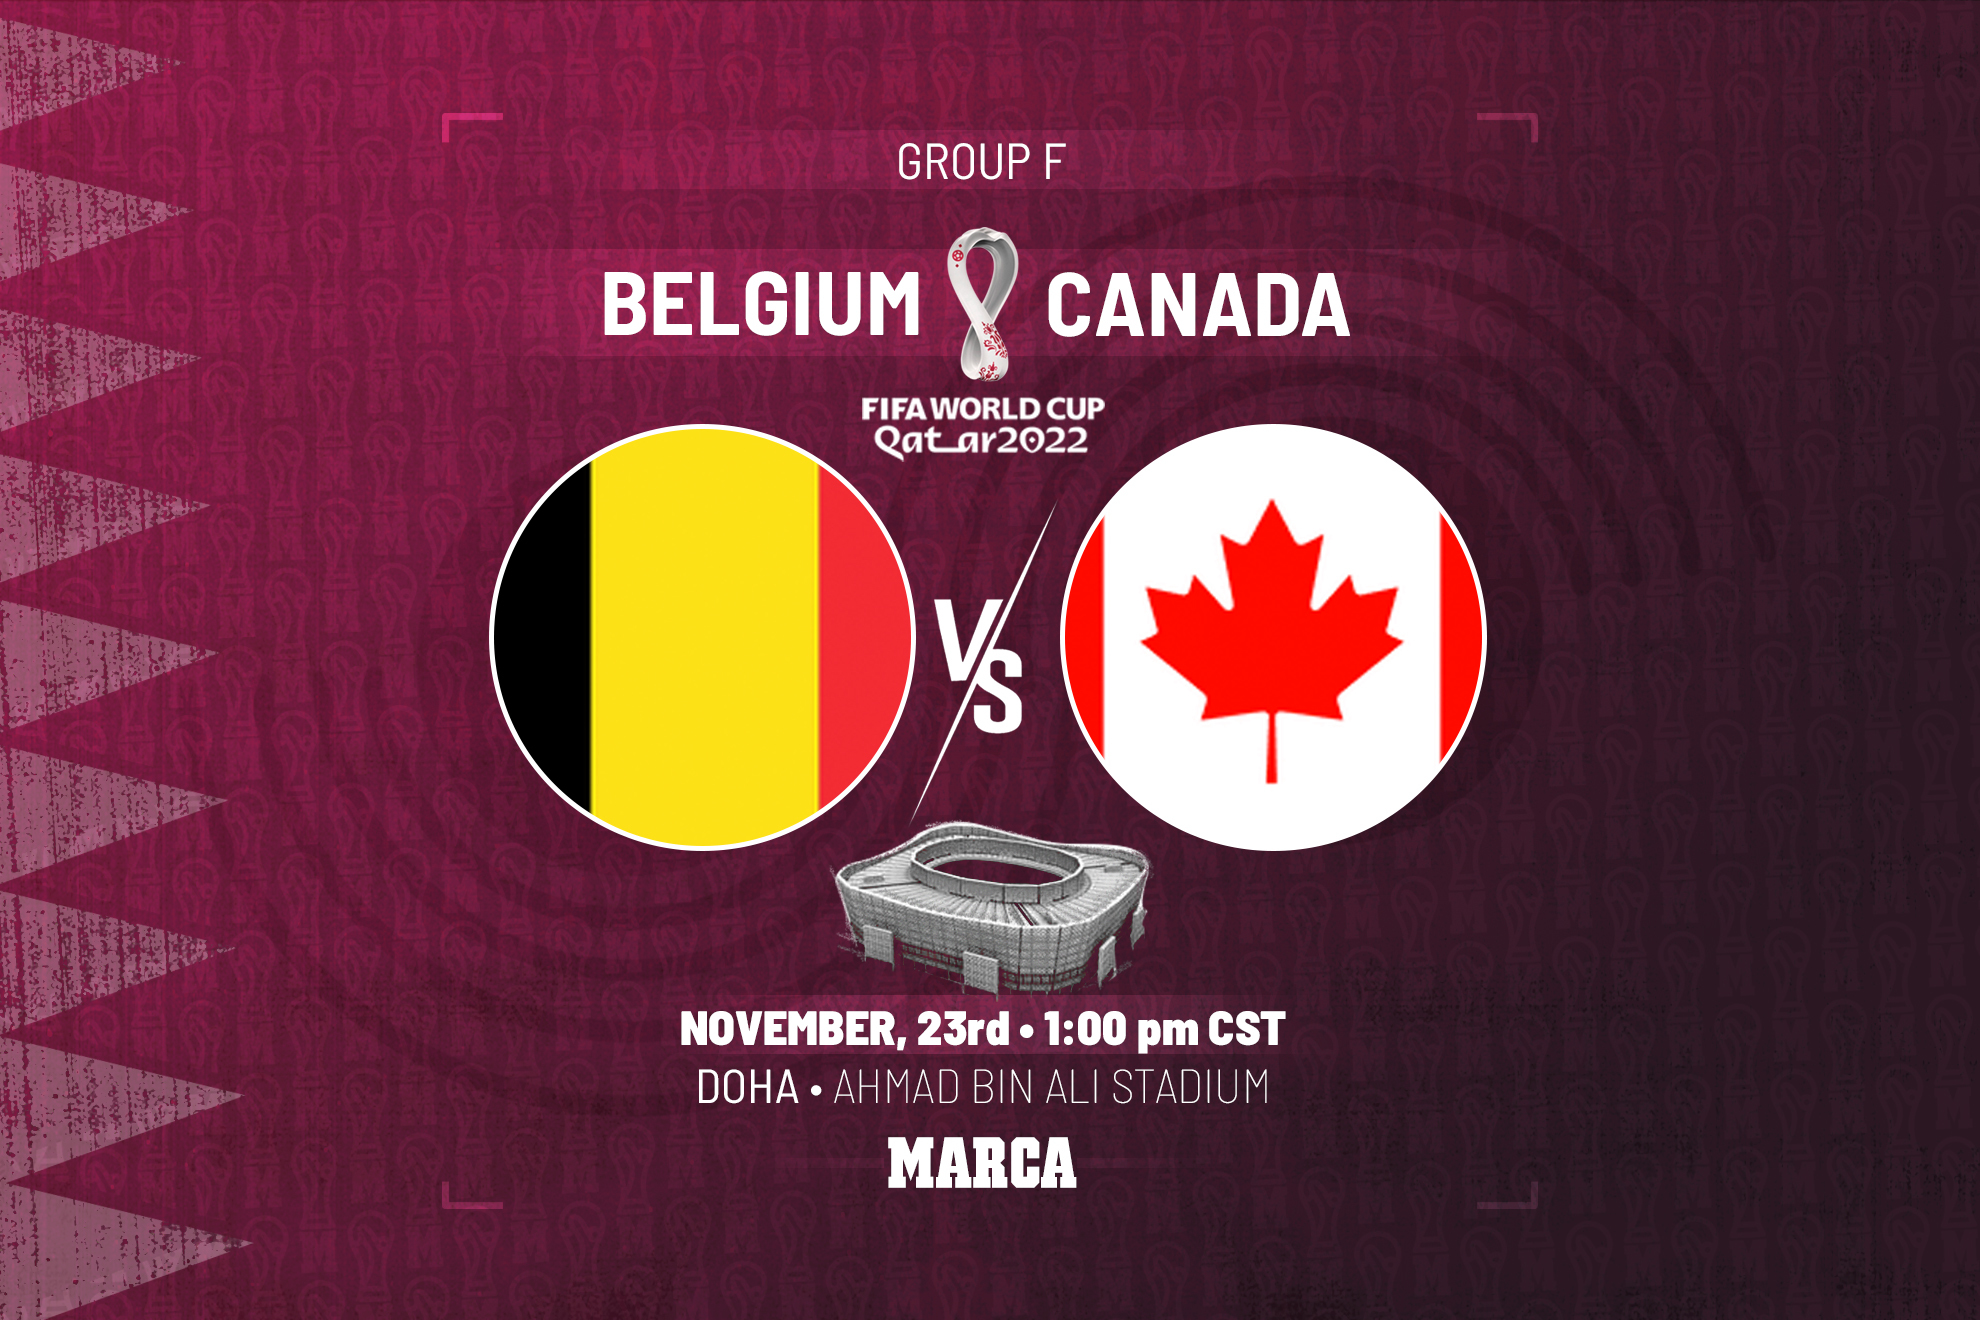 Belgium vs Canada Game Time